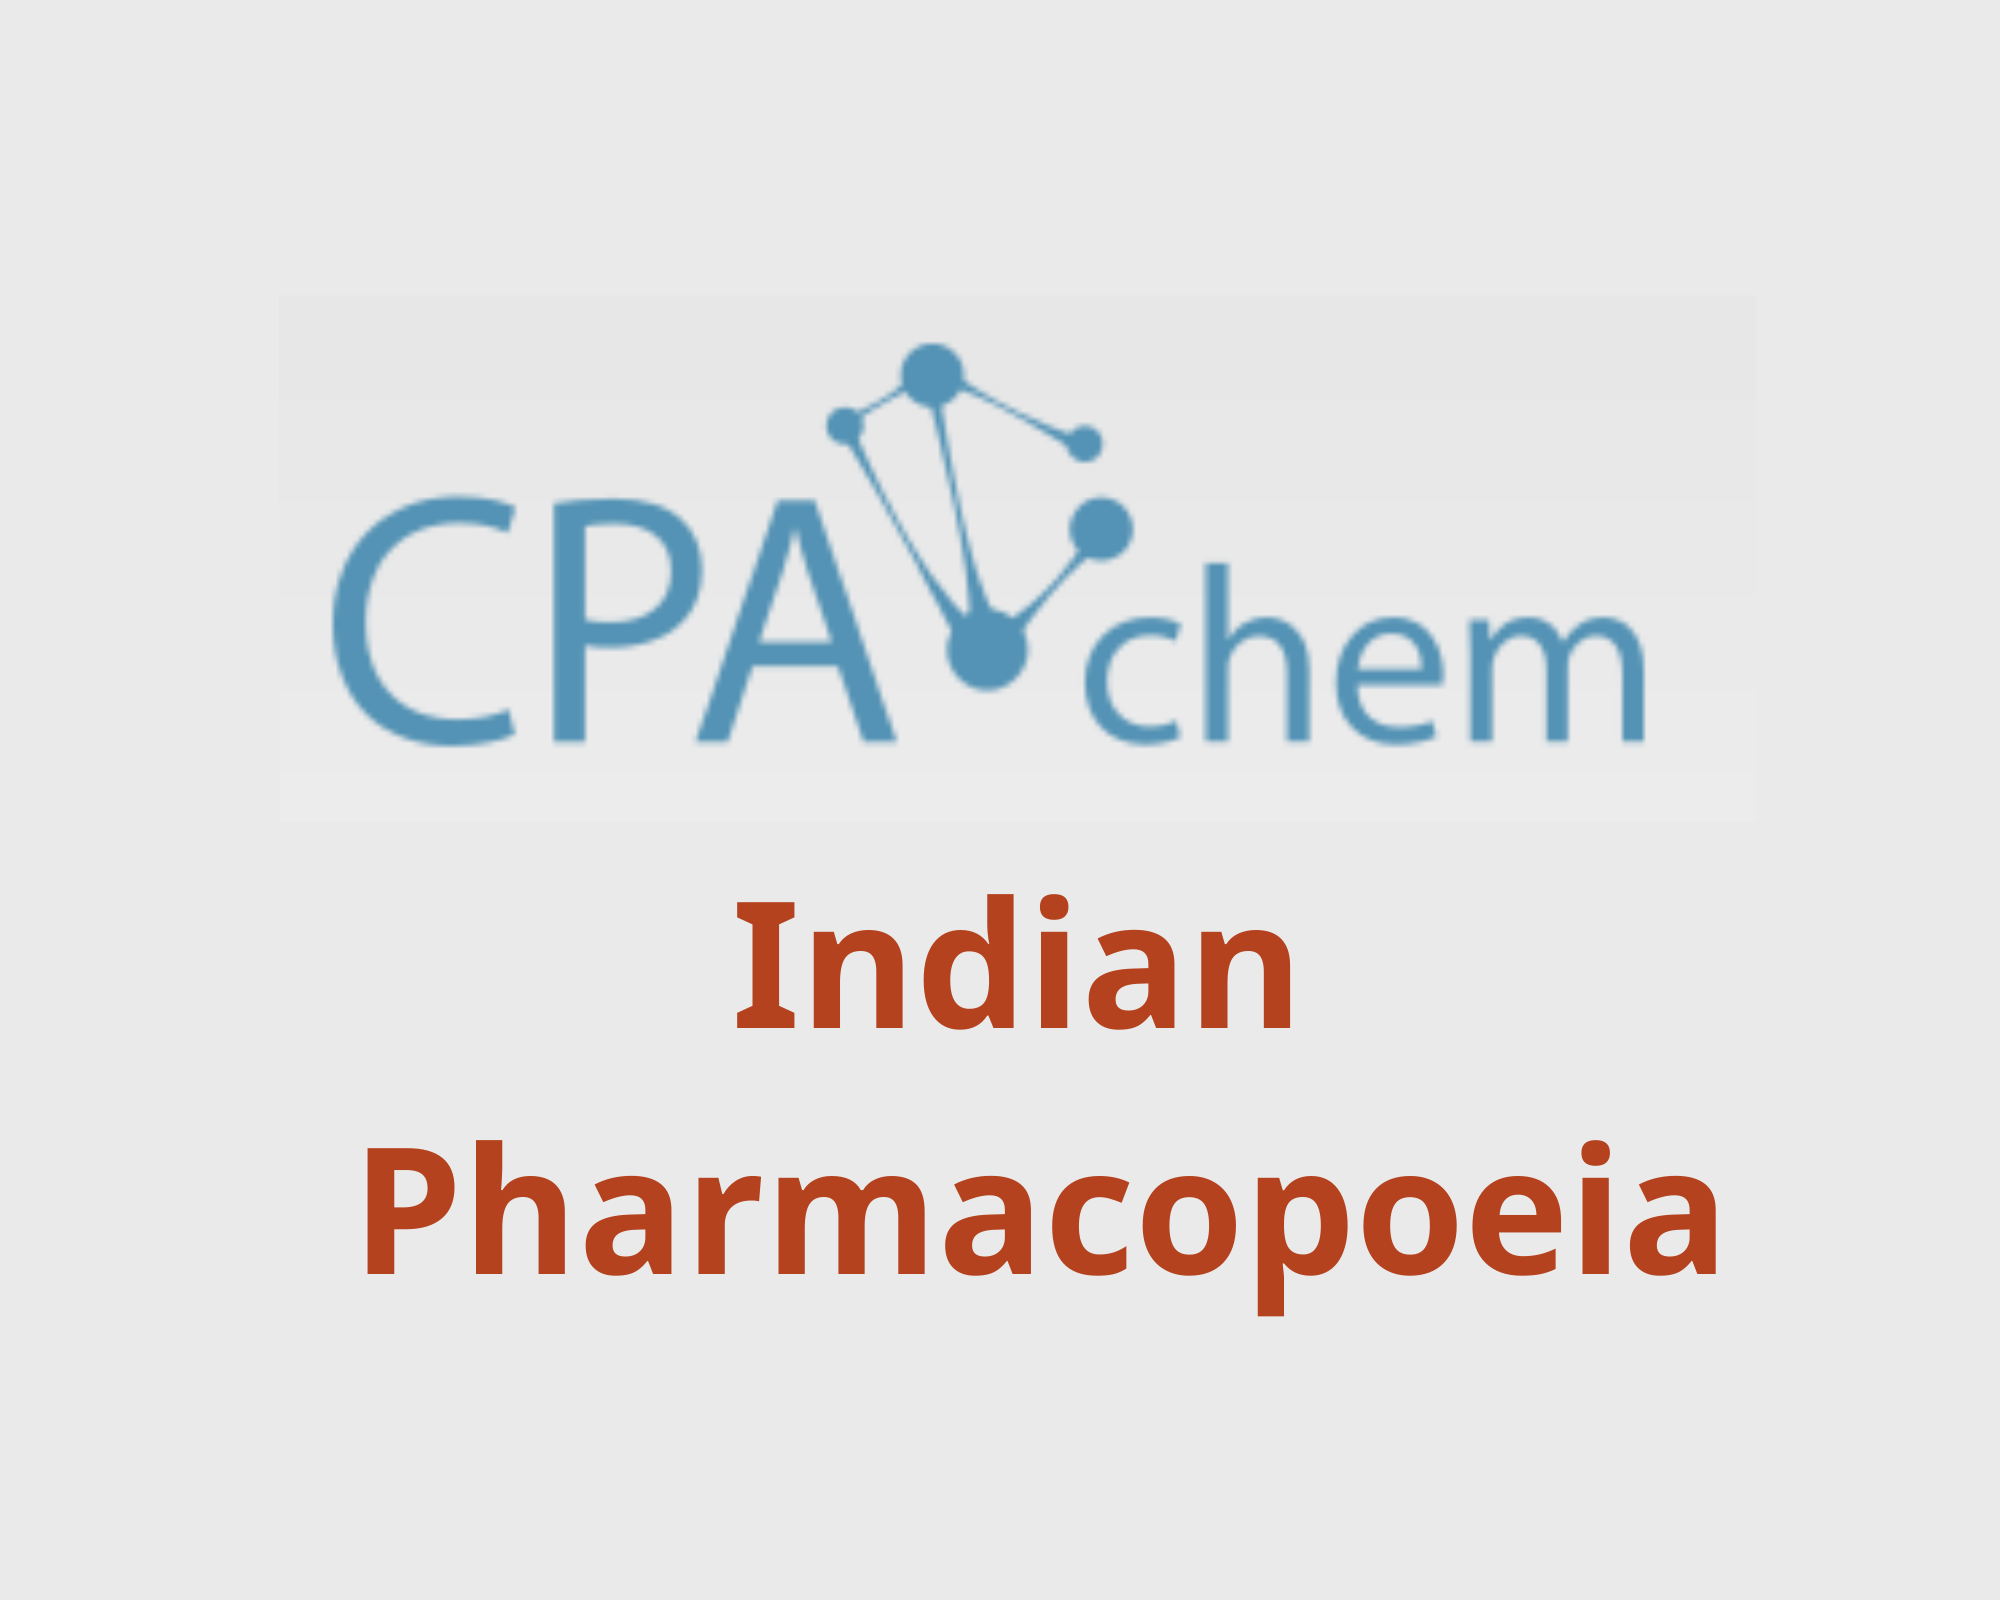 Danh sách các Chất Chuẩn Dược theo Dược Điển Ấn Độ - Indian Pharmacopoeia, CPAChem, Bungari